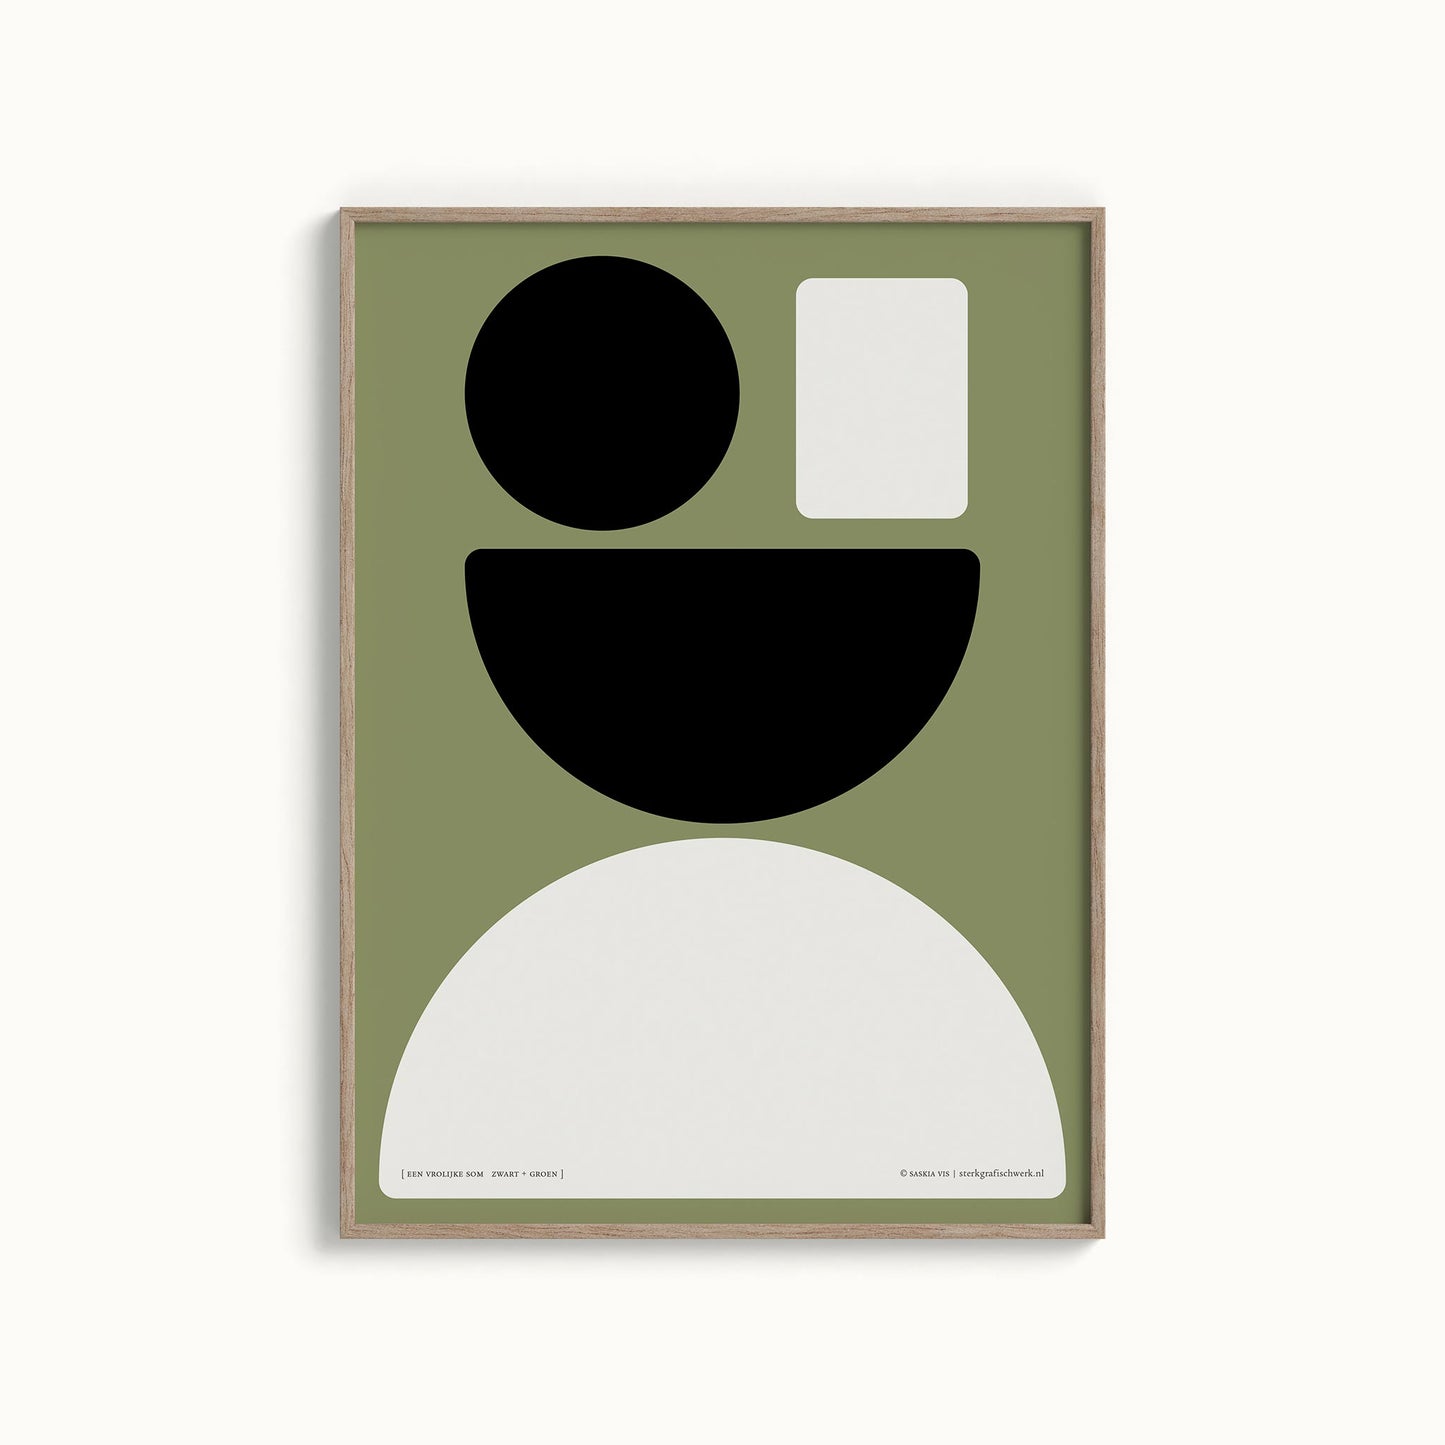 Productafbeelding poster "een vrolijke som zwart+groen" 3de impressie foto ingelijst hangend aan een wand